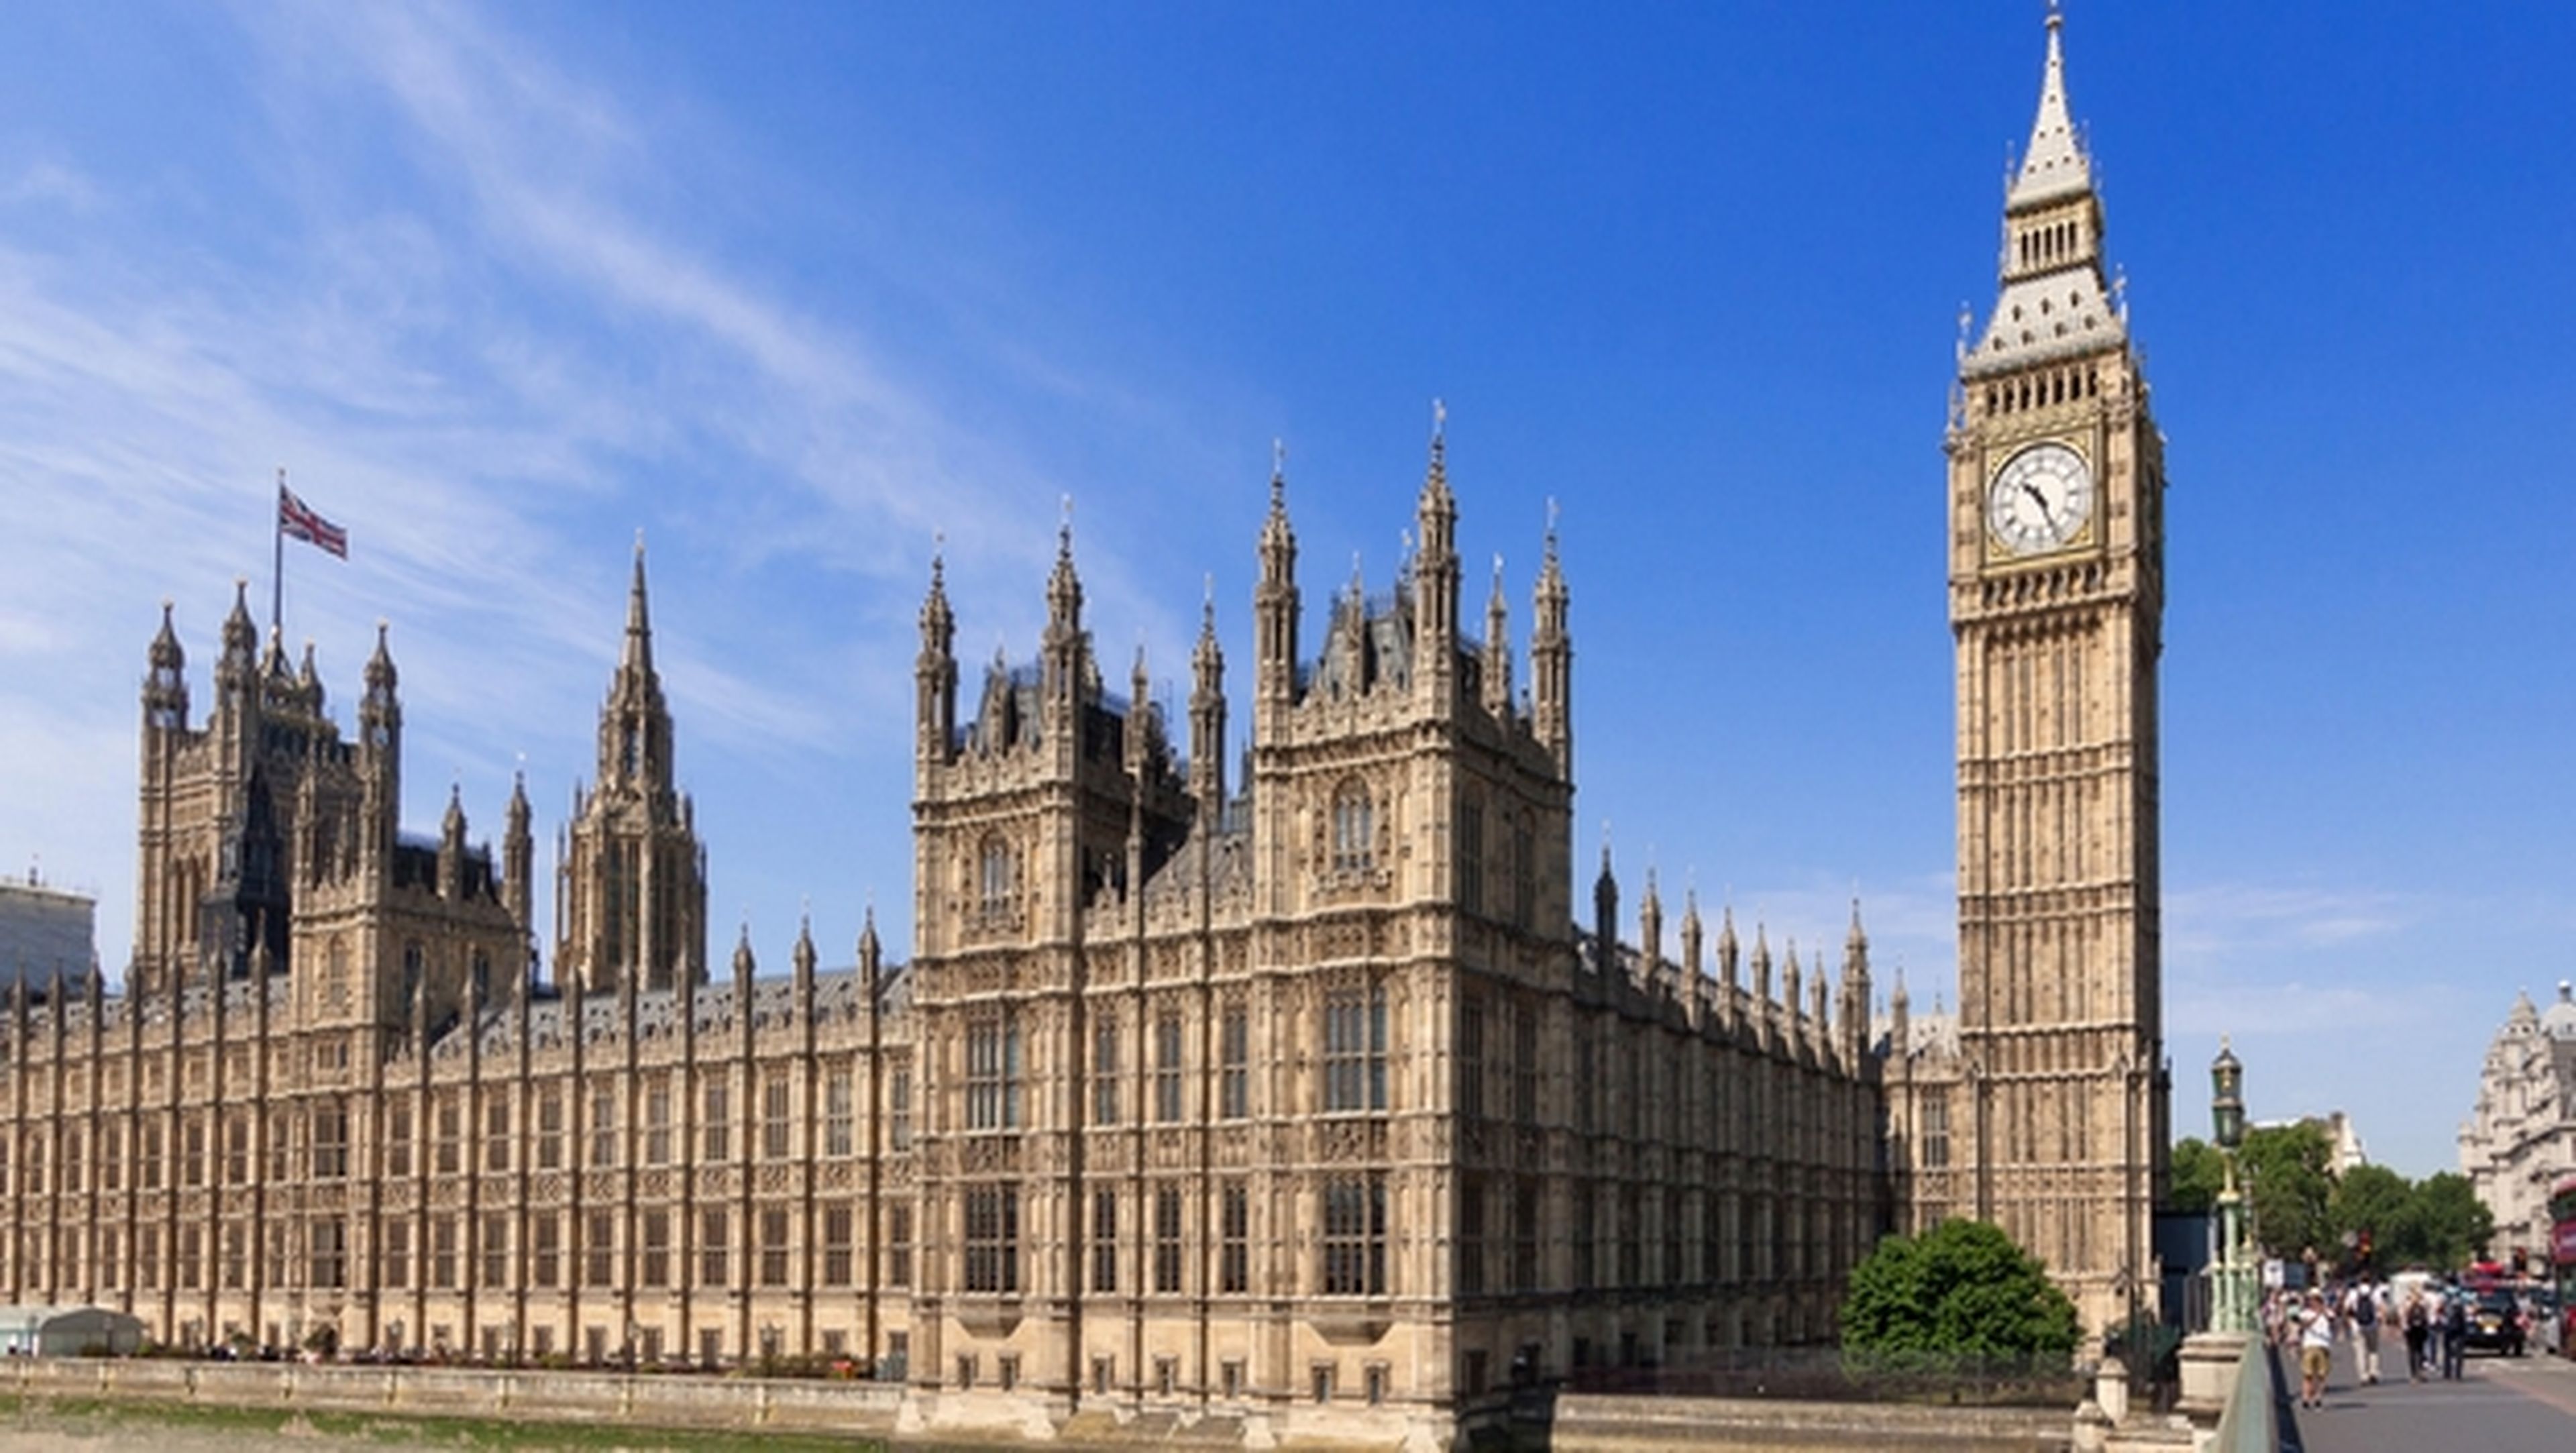 El parlamento británico ha sido hackeado, roban cuentas de emails